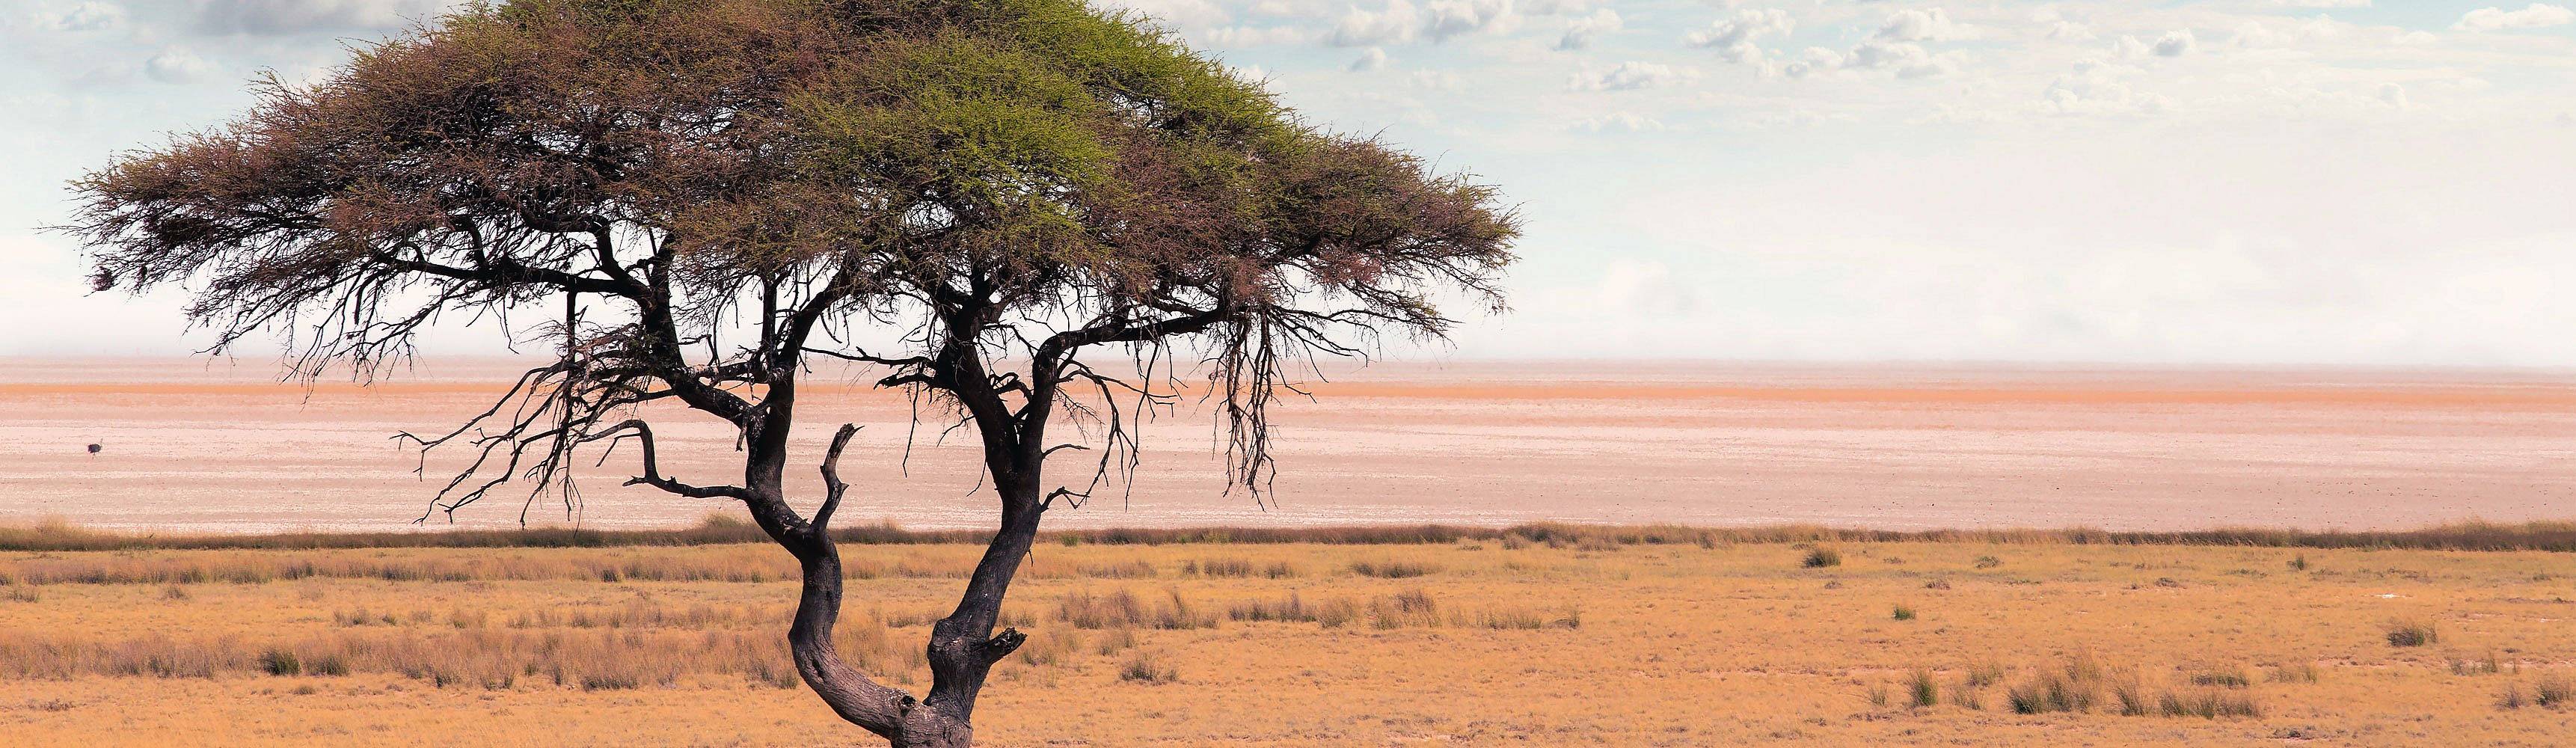 Wüstentour Botswana - Individualreise buchen